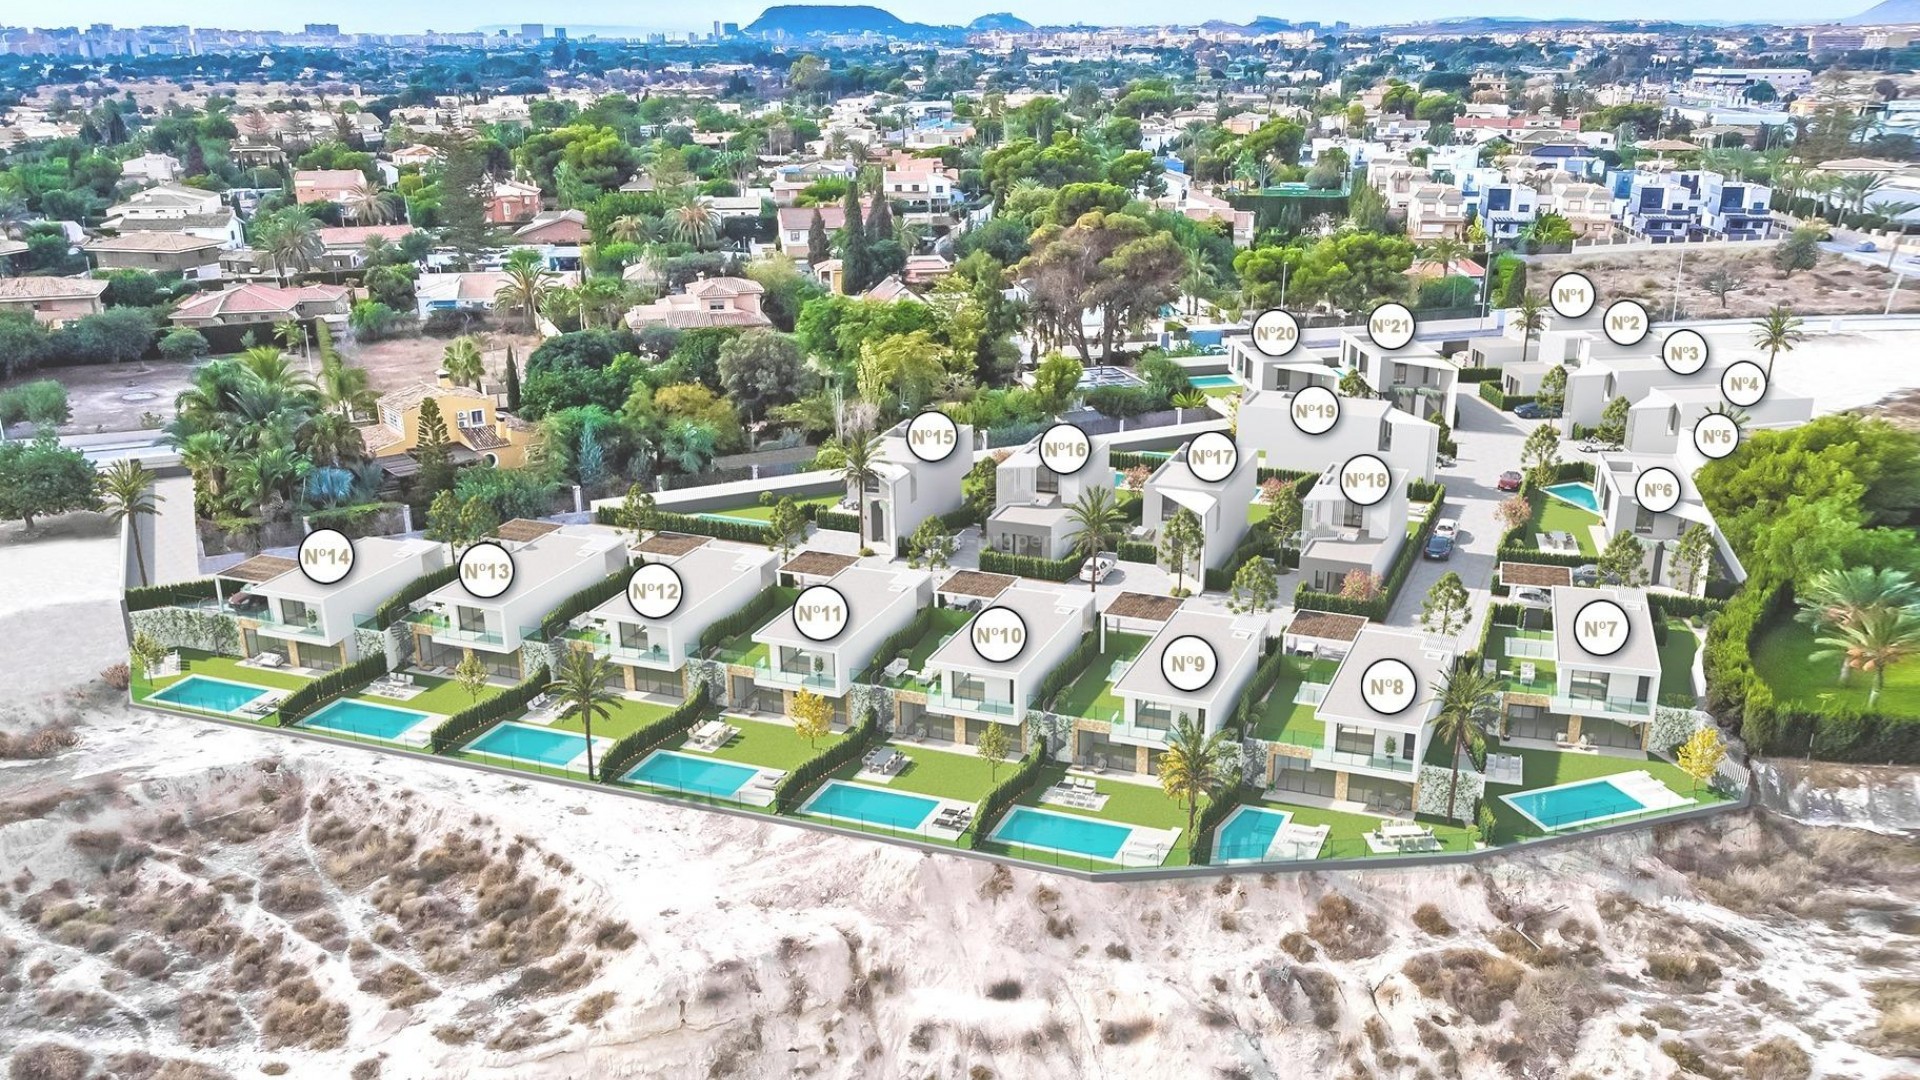 Luksus-villaer i San Juan de Alicante. 3 modeller og 21 villaer m/svømmebasseng og grøntområde.1200 meter til fantastike lange sandstrender og nær Alicante